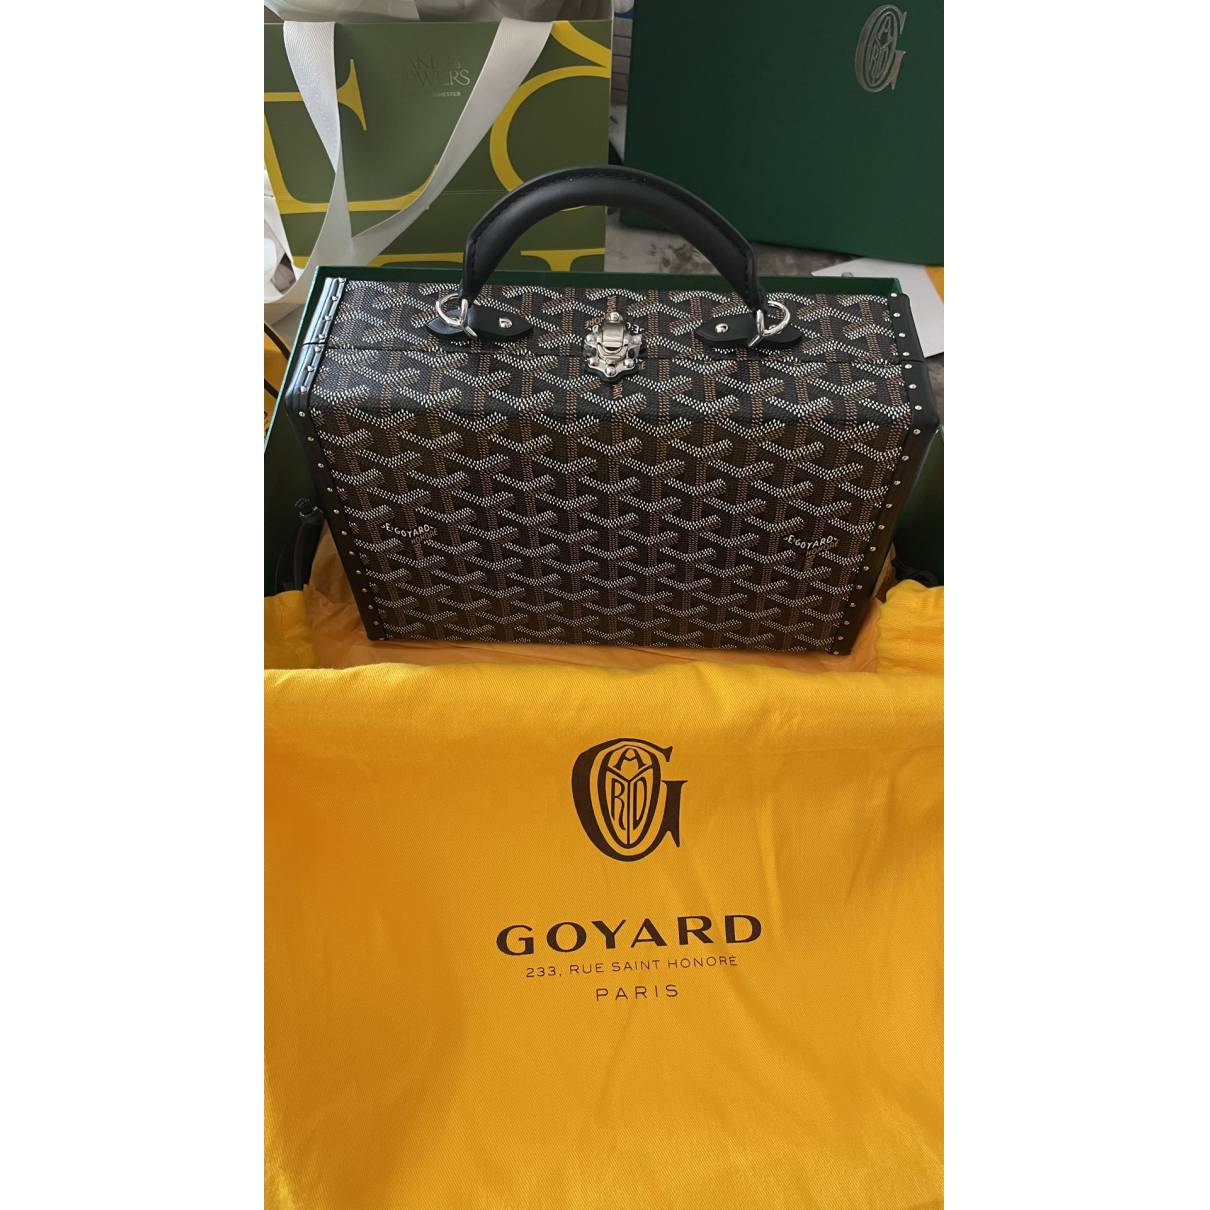 GOYARD Goyardine Grand Hotel Trunk Bag Green 1251219